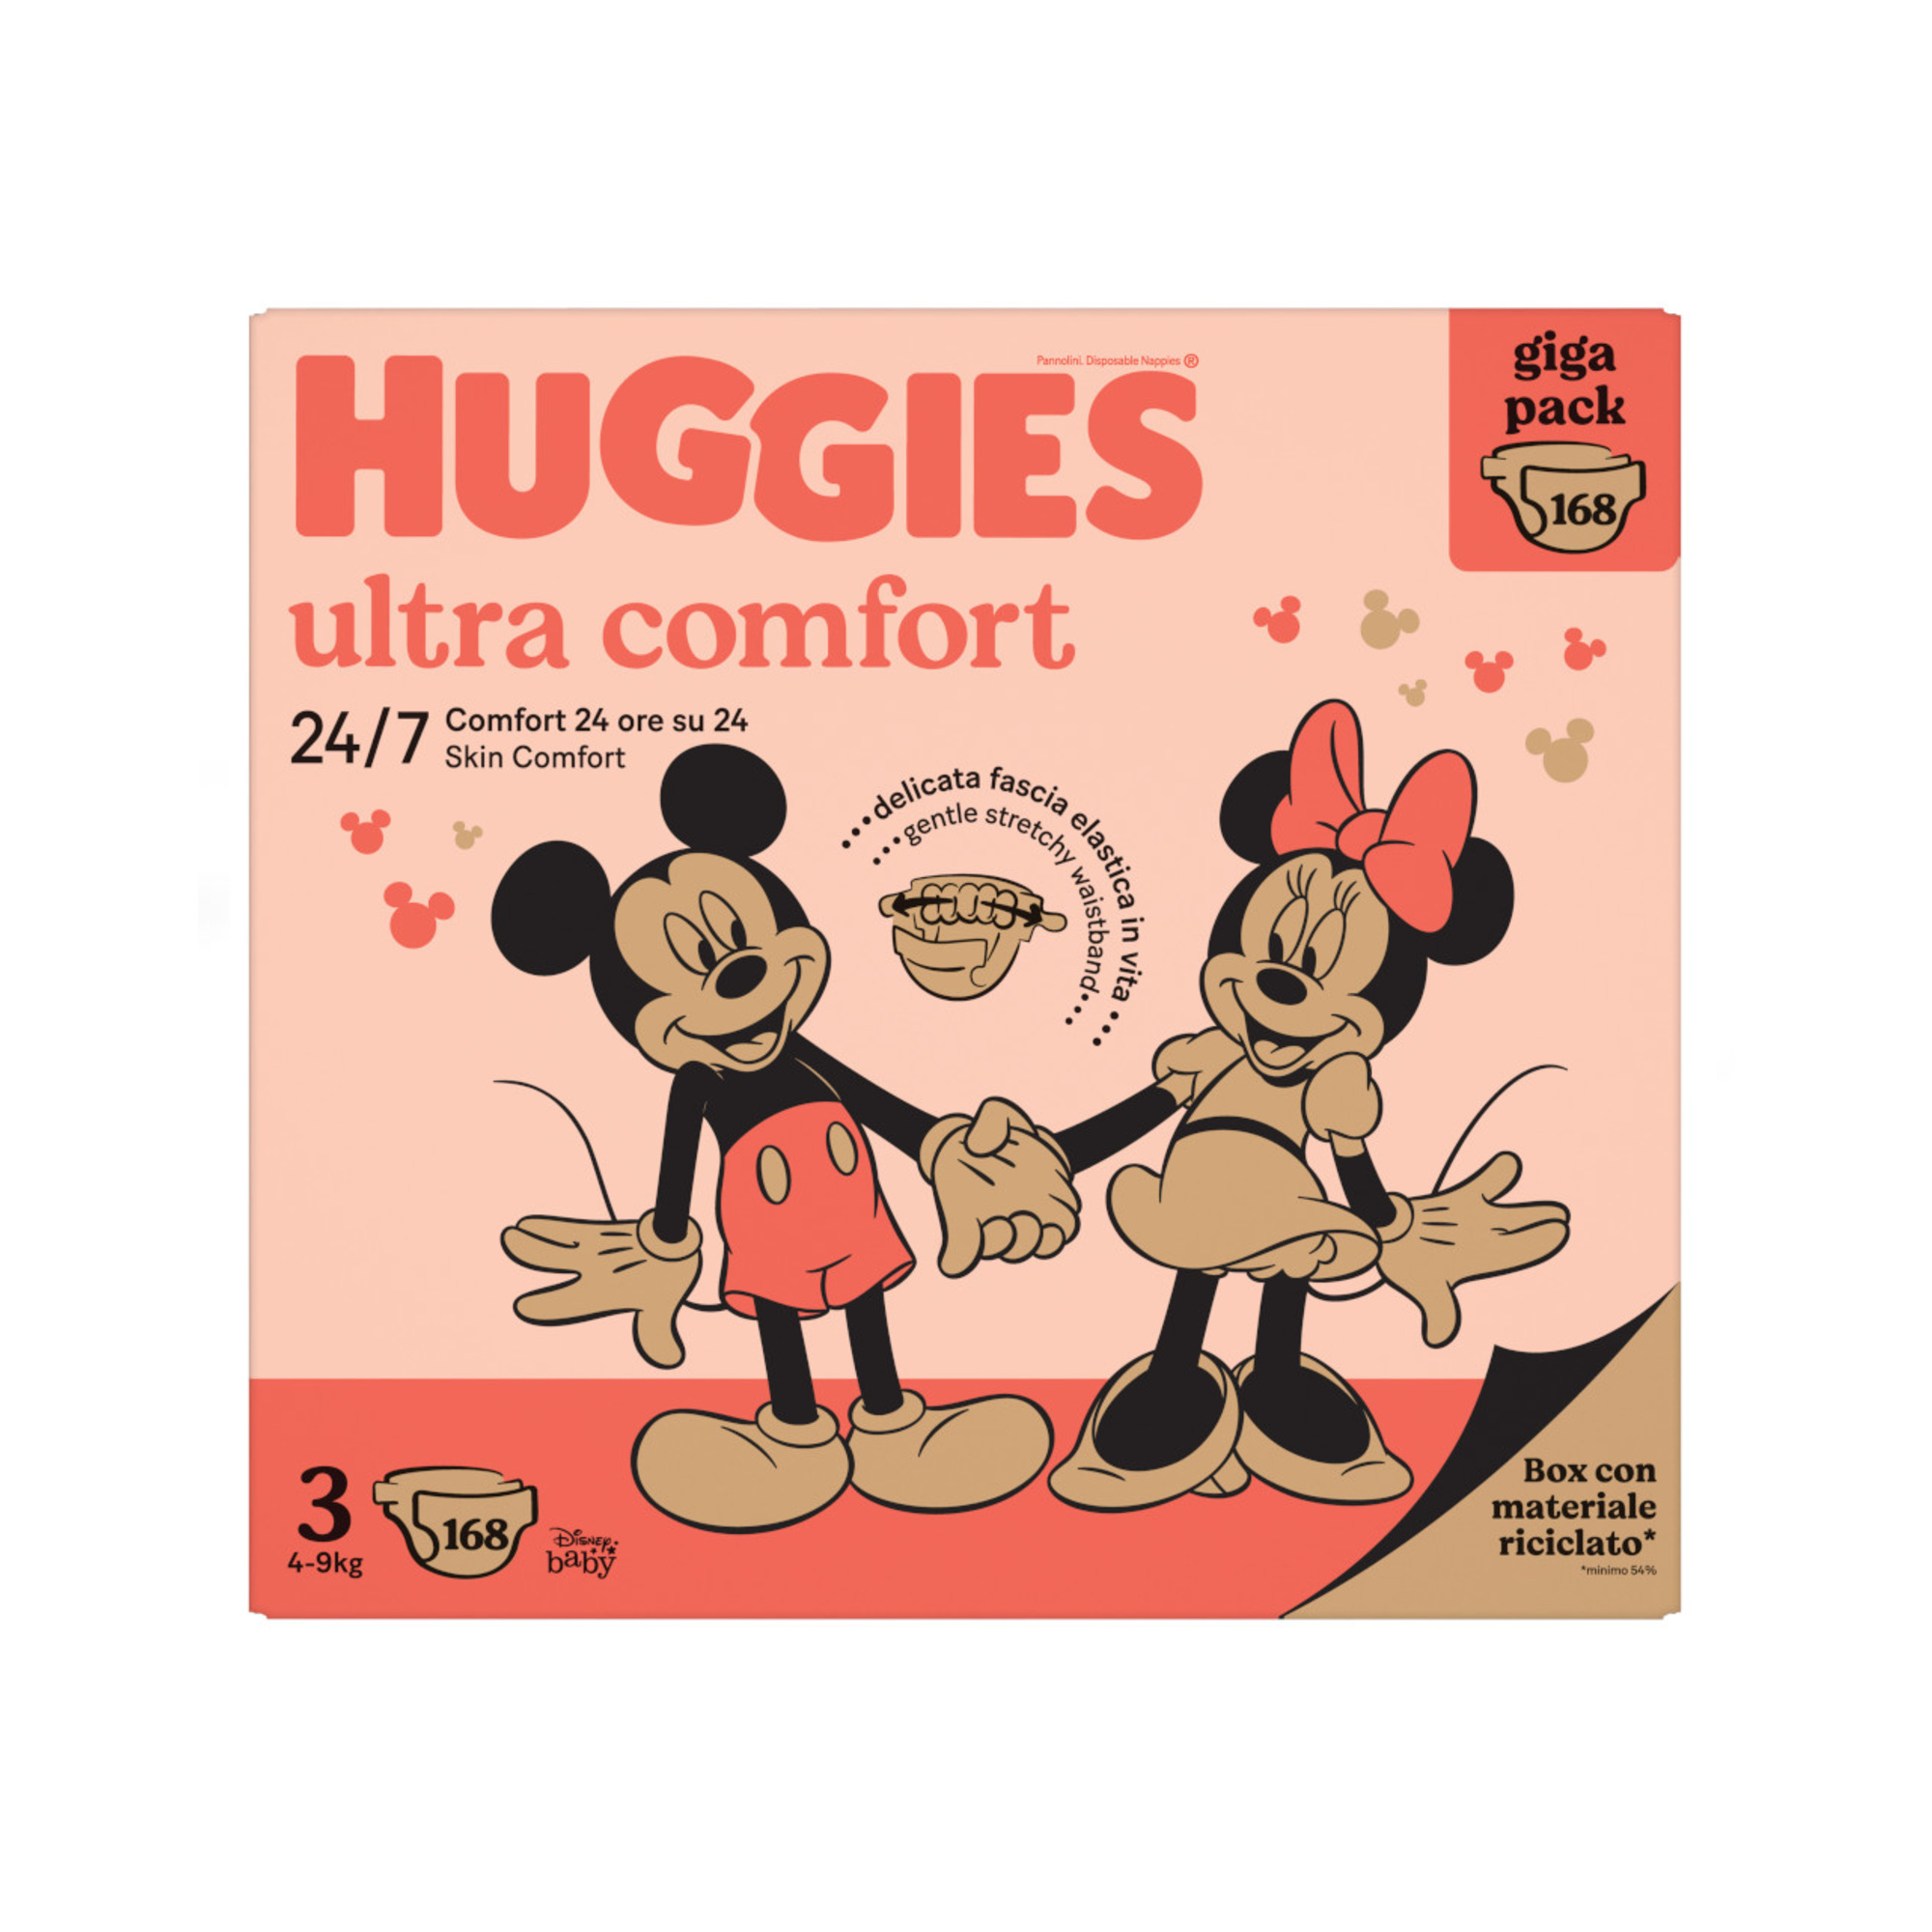 Gigapack tg.3 168 pannolini - huggies ultra comfort - Huggies